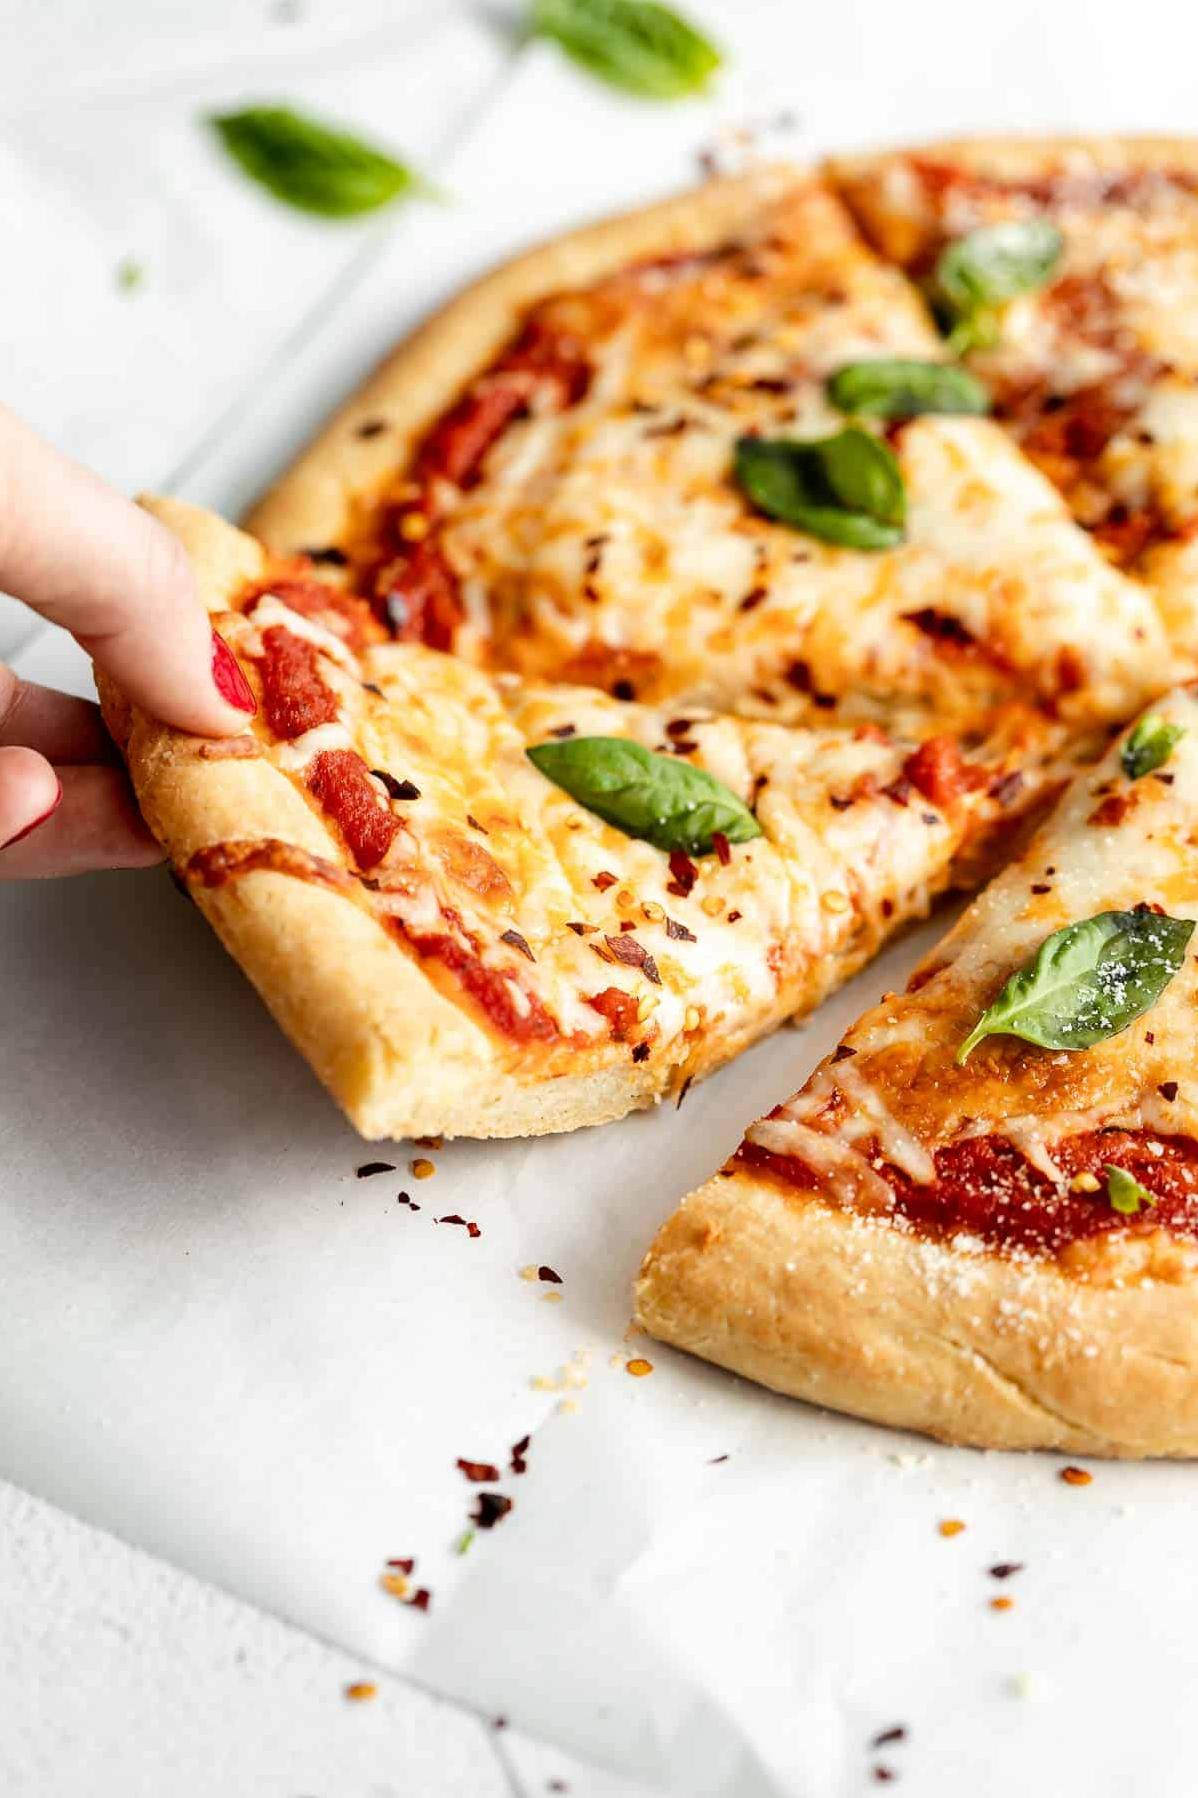 Delicious Gluten-Free Pizza Dough Recipe for Crispy Crust